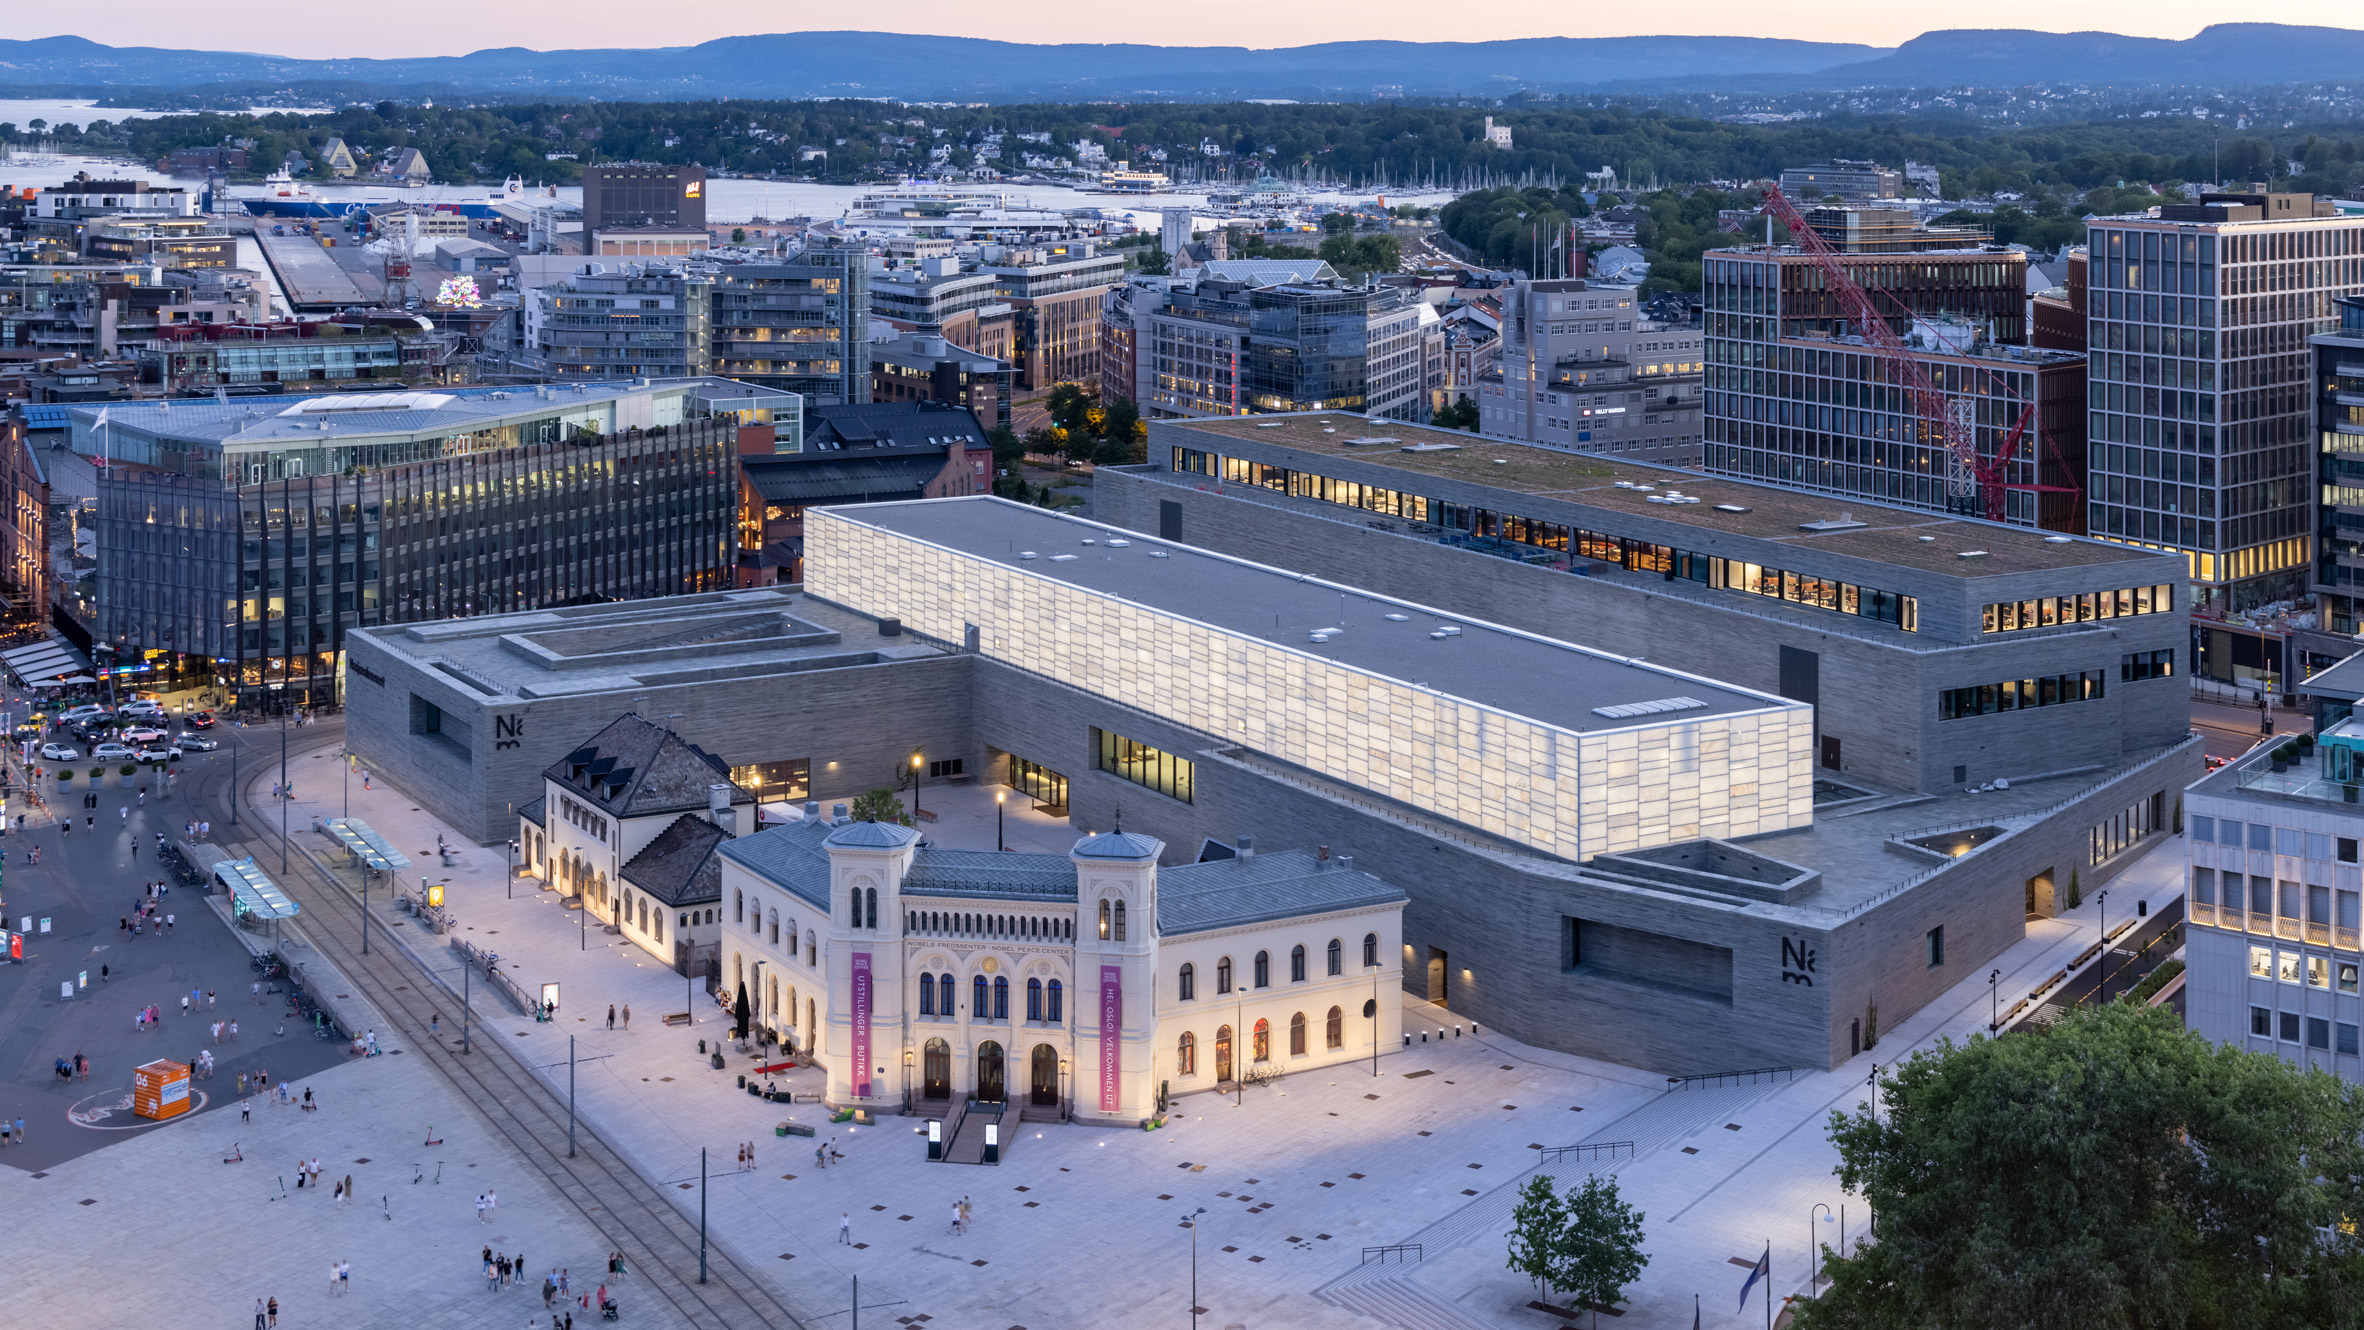 Louis Vuitton. Oslo, Norway.